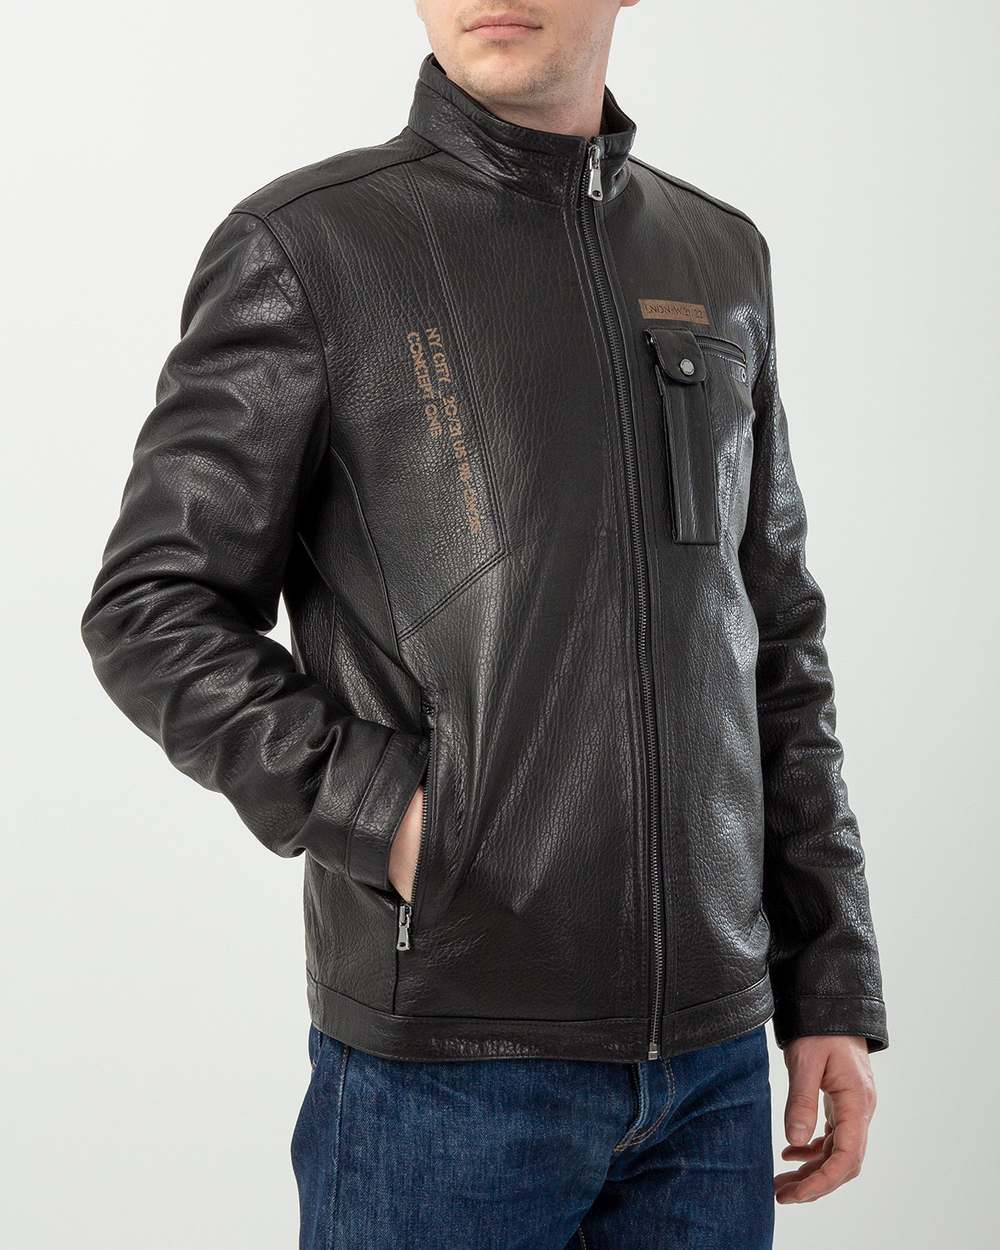 Куртка мужская GIO MELLI 772, черный